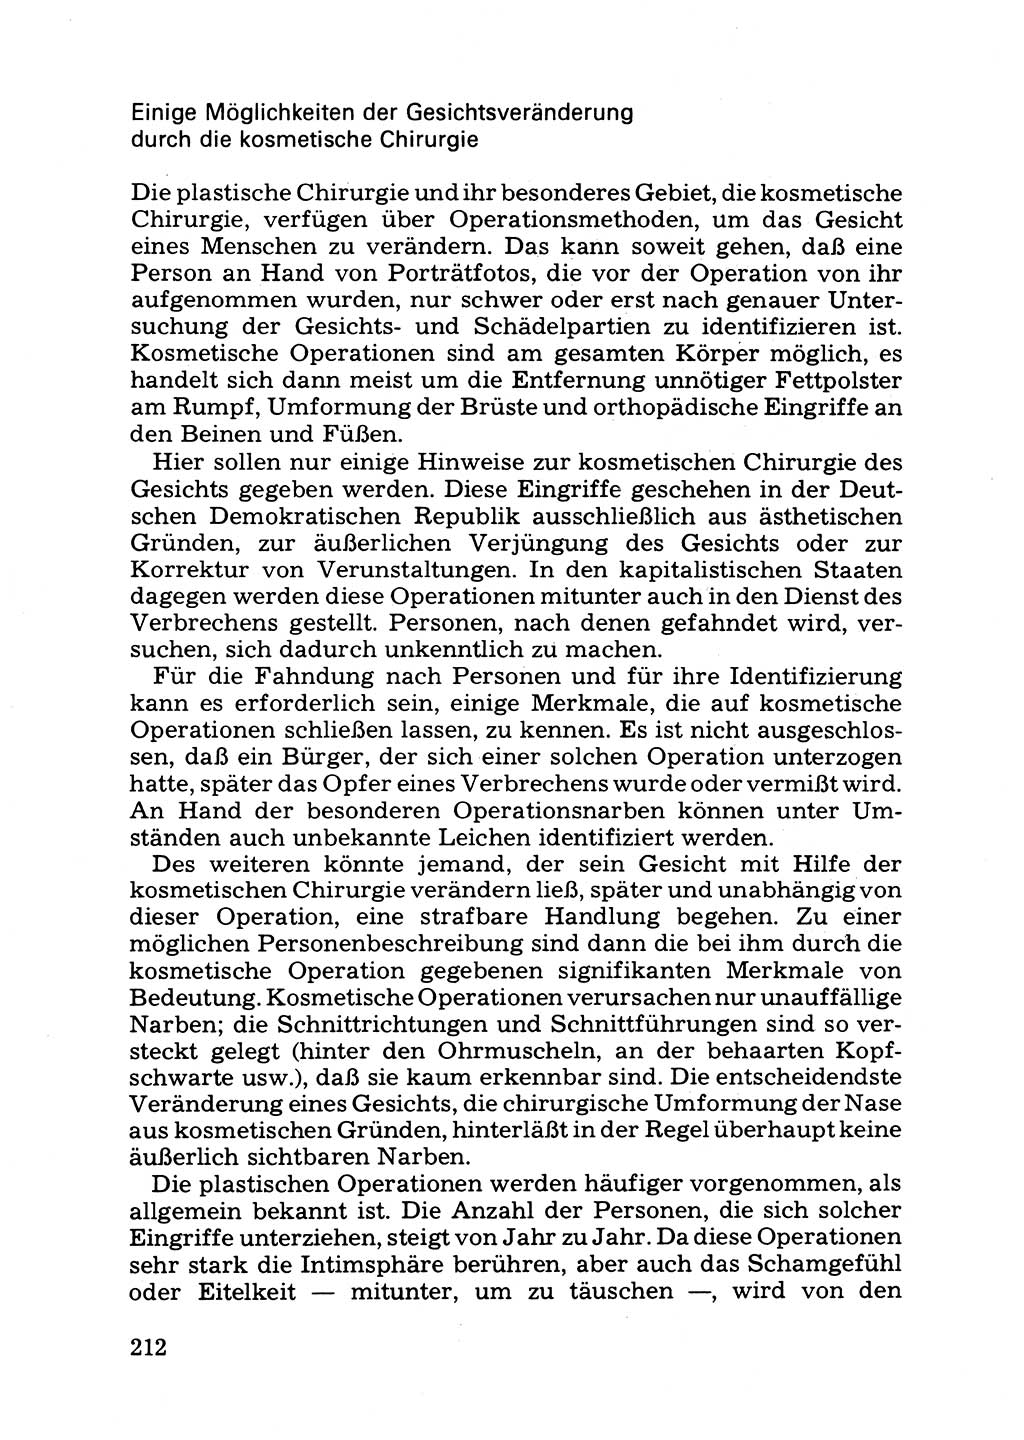 Das subjektive Porträt [Deutsche Demokratische Republik (DDR)] 1981, Seite 212 (Subj. Port. DDR 1981, S. 212)